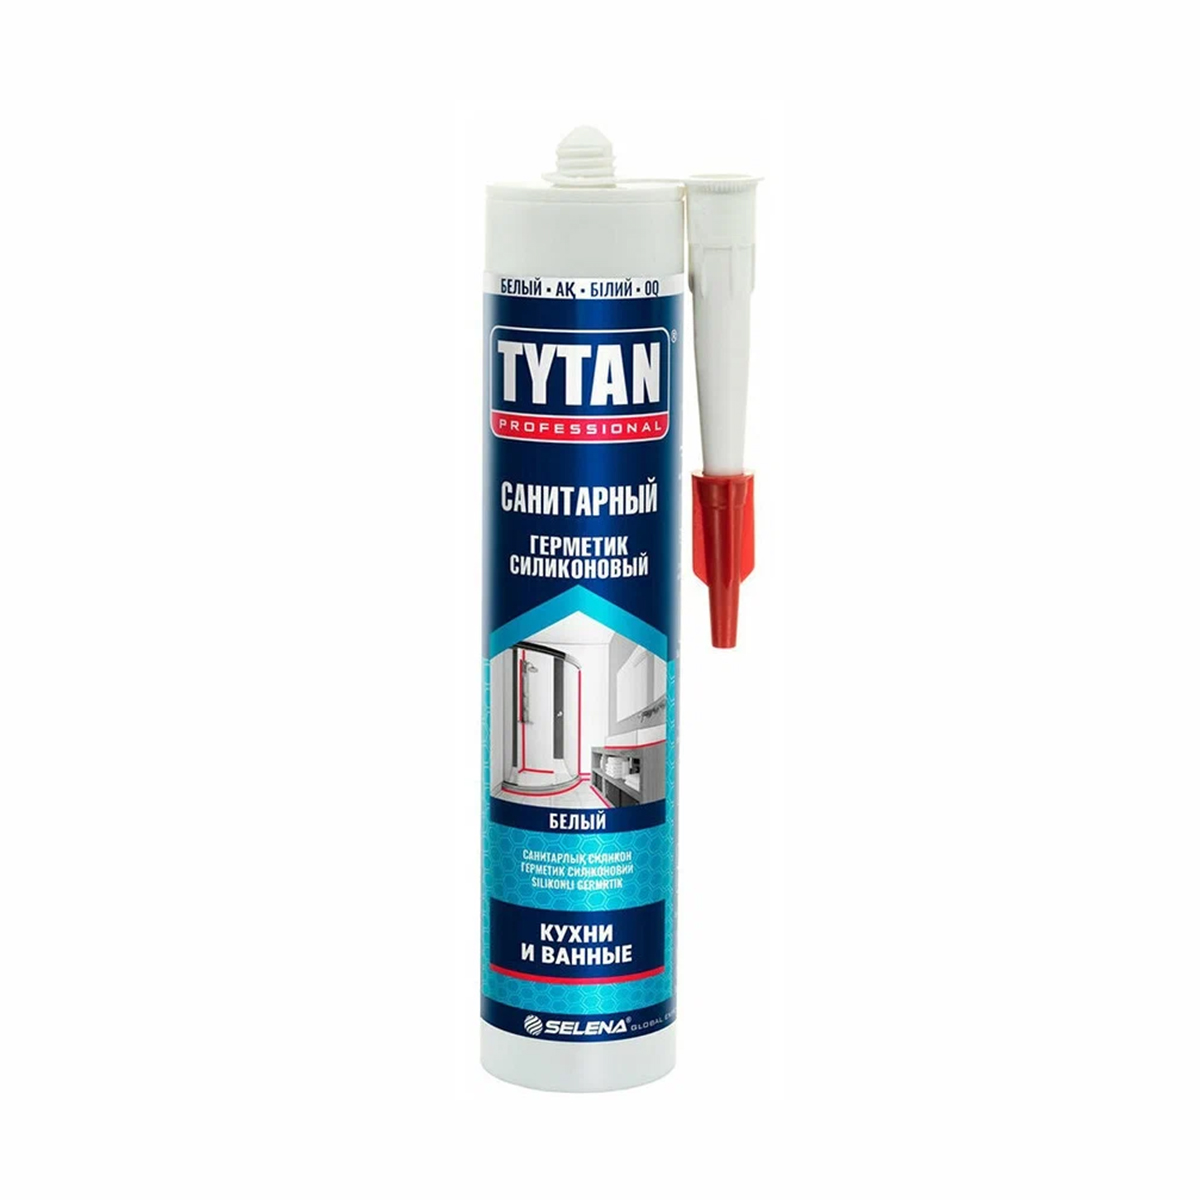 Силиконовый санитарный герметик Tytan Professional 17438, 280 мл, белый герметик силиконовый tytan универсальный белый 280 мл